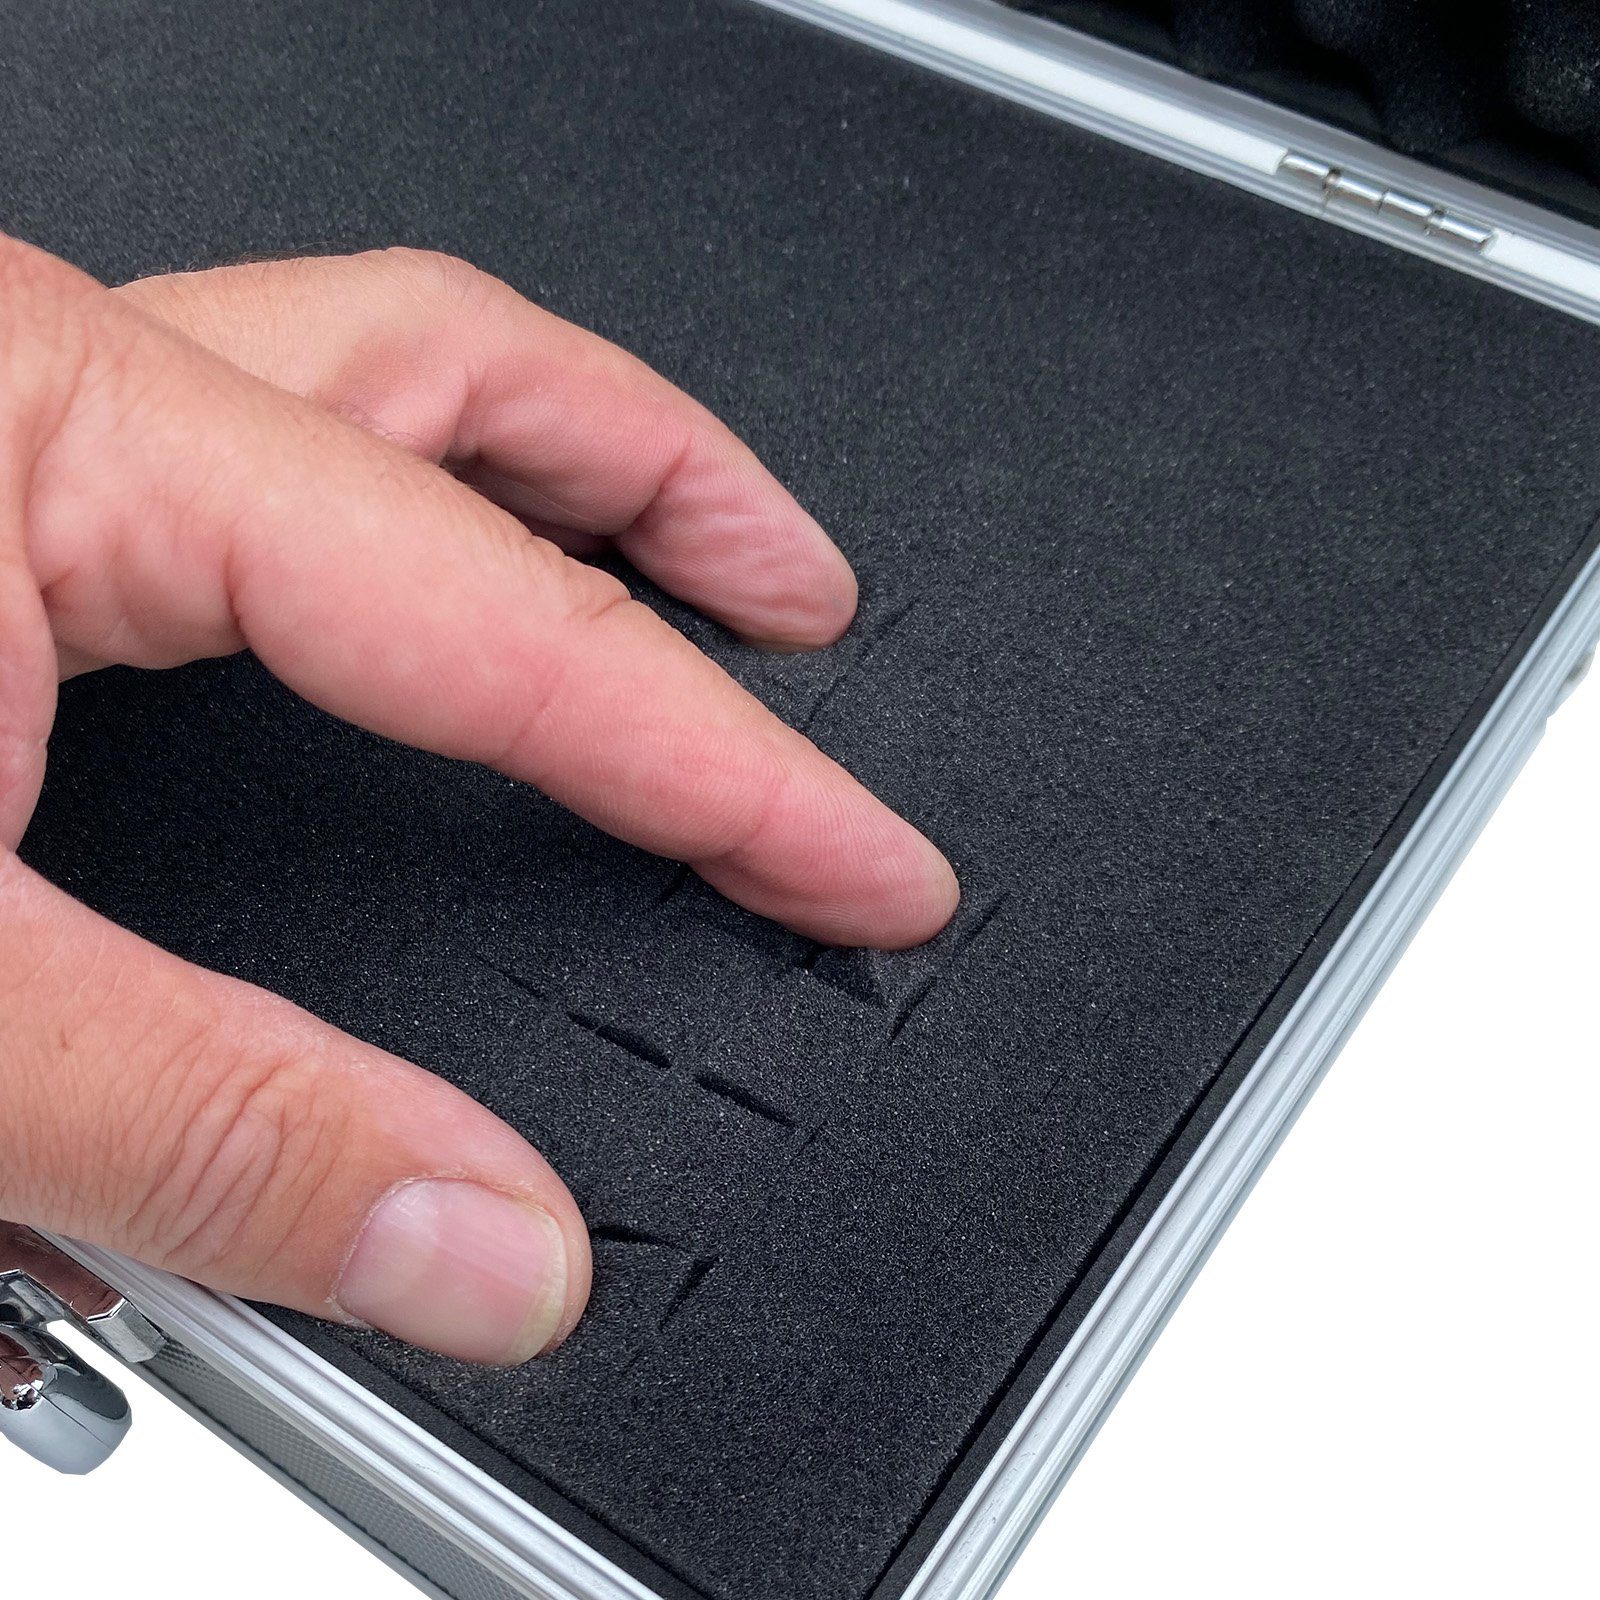 (LxBxH Farben Grau mit Tools Koffer ECI Box verschiedene Schaumstoffeinlage Aluminium Werkzeugkoffer